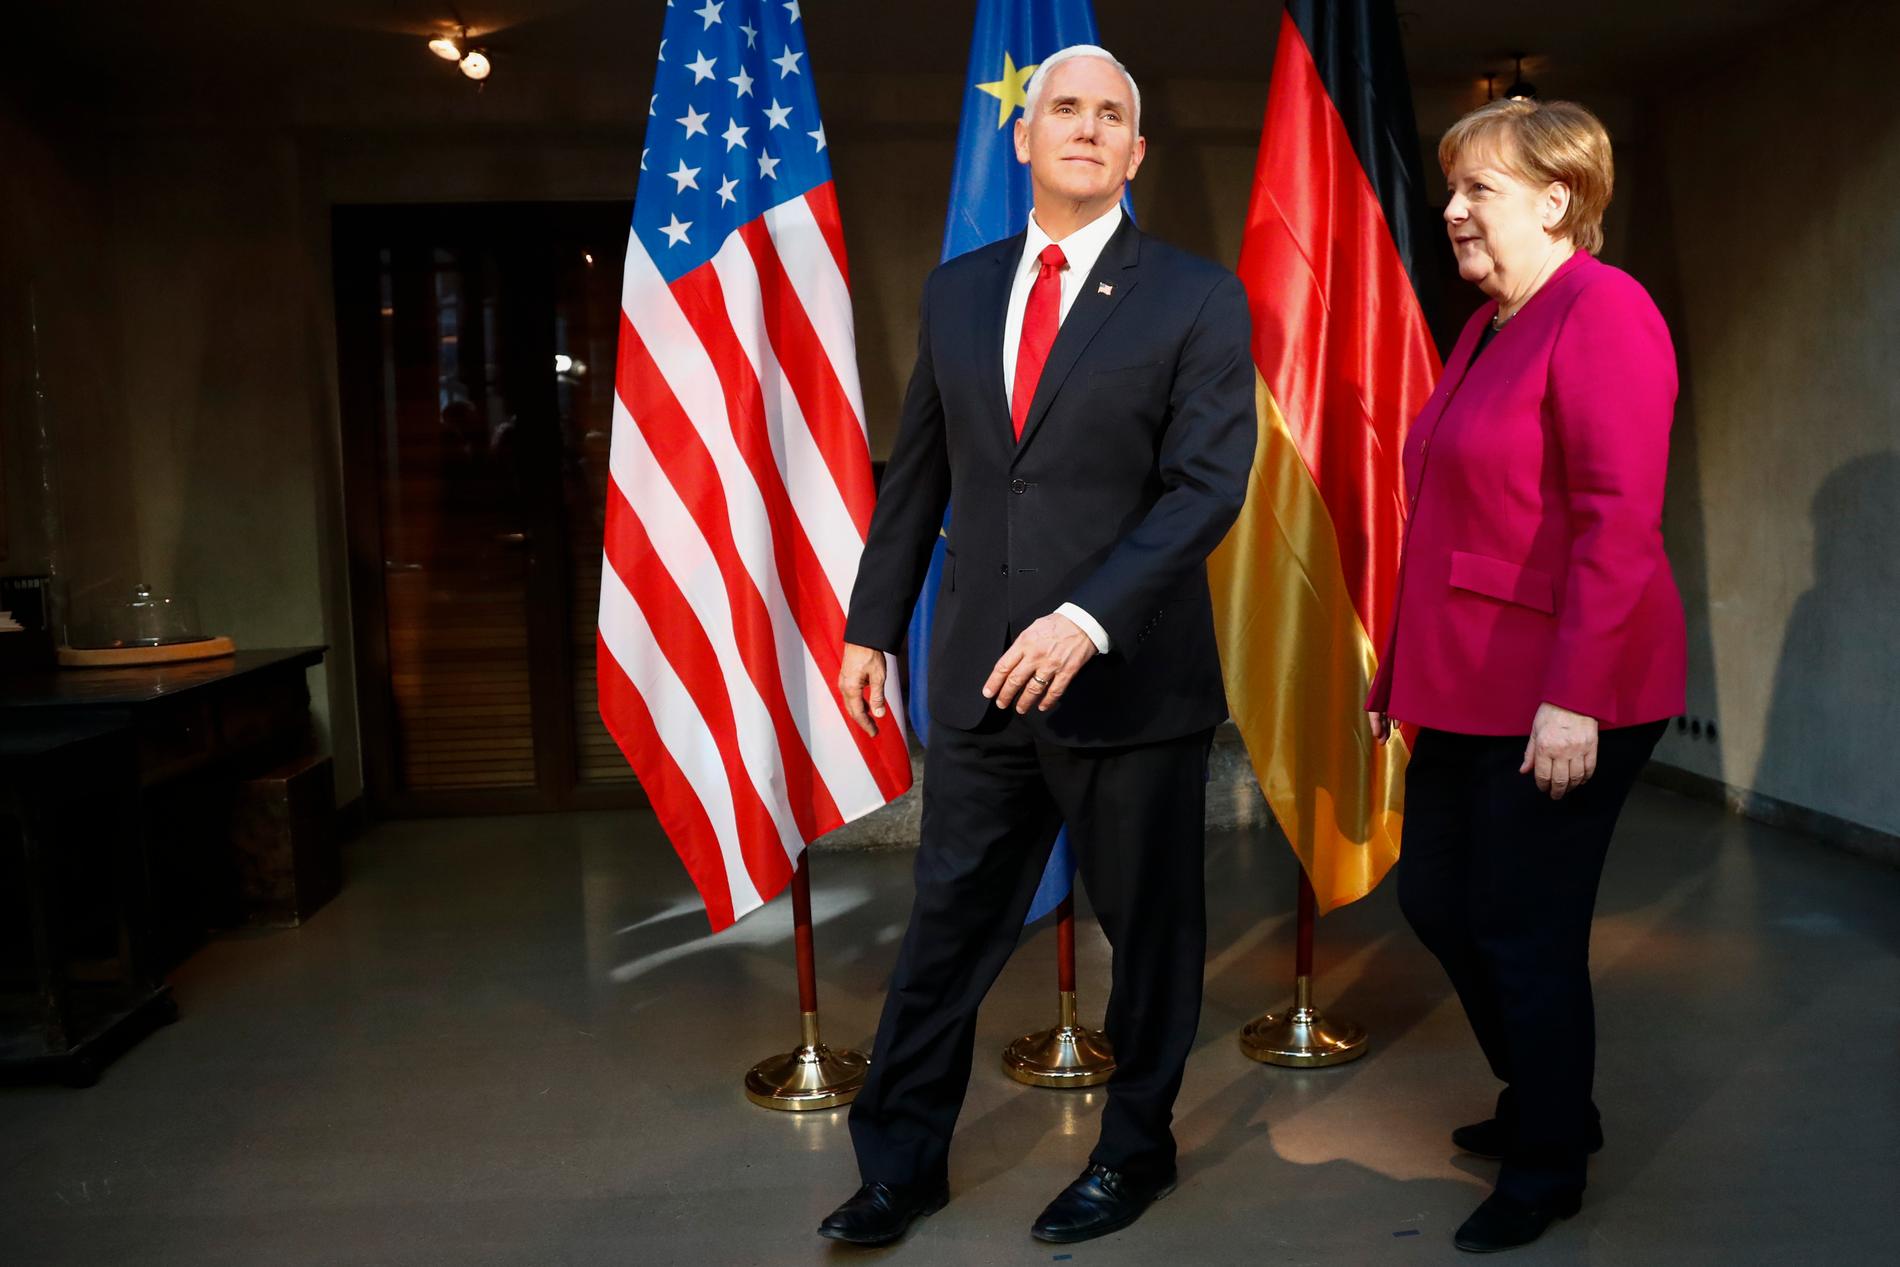 Motsättningarna mellan USA och EU blev tydliga under säkerhetsmötet i München. Här USA:s vicepresident Mike Pence och Tysklands förbundskansler Angela Merkel.